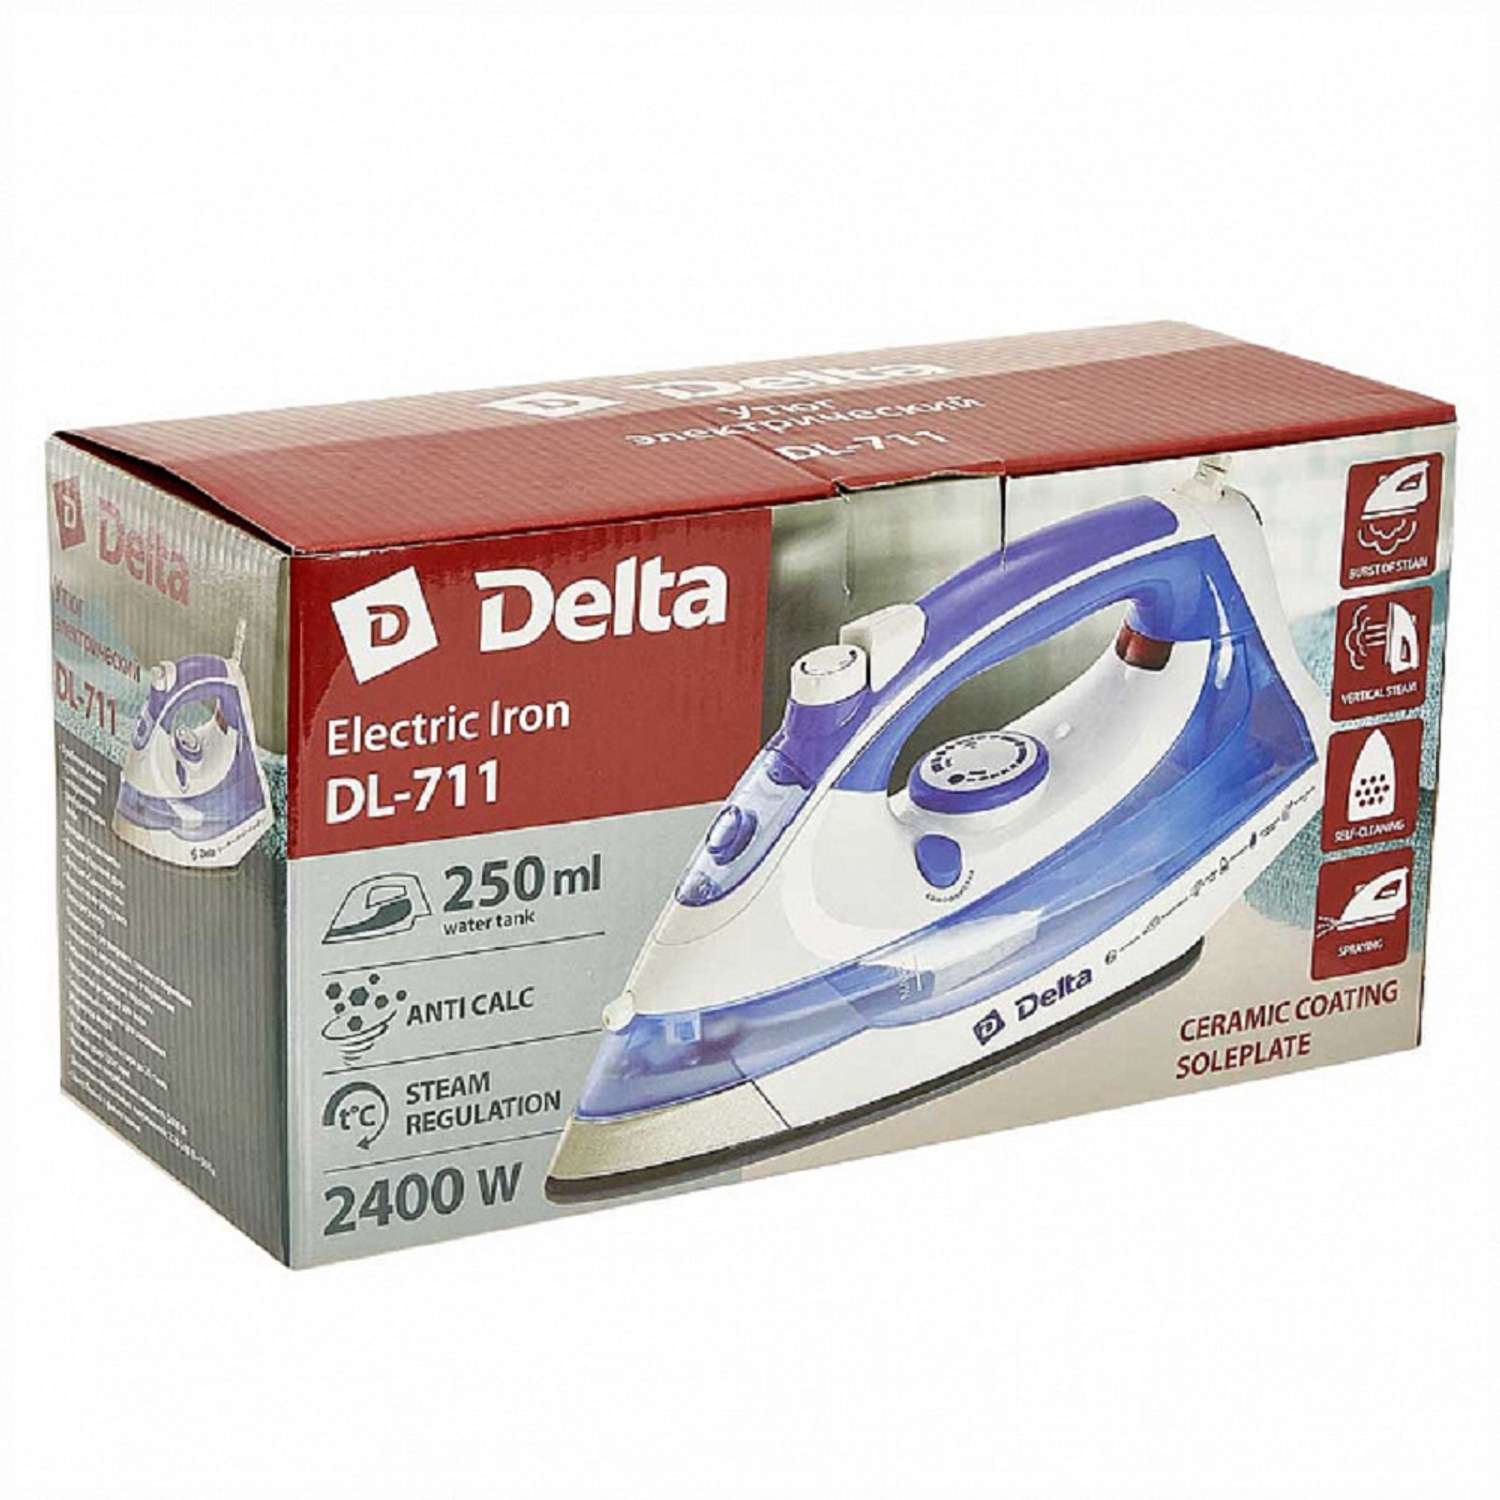 Утюг Delta DL-711 белый с фиолетовым 2400 Вт Керамическое покрытие подошвы антинакипь - фото 4